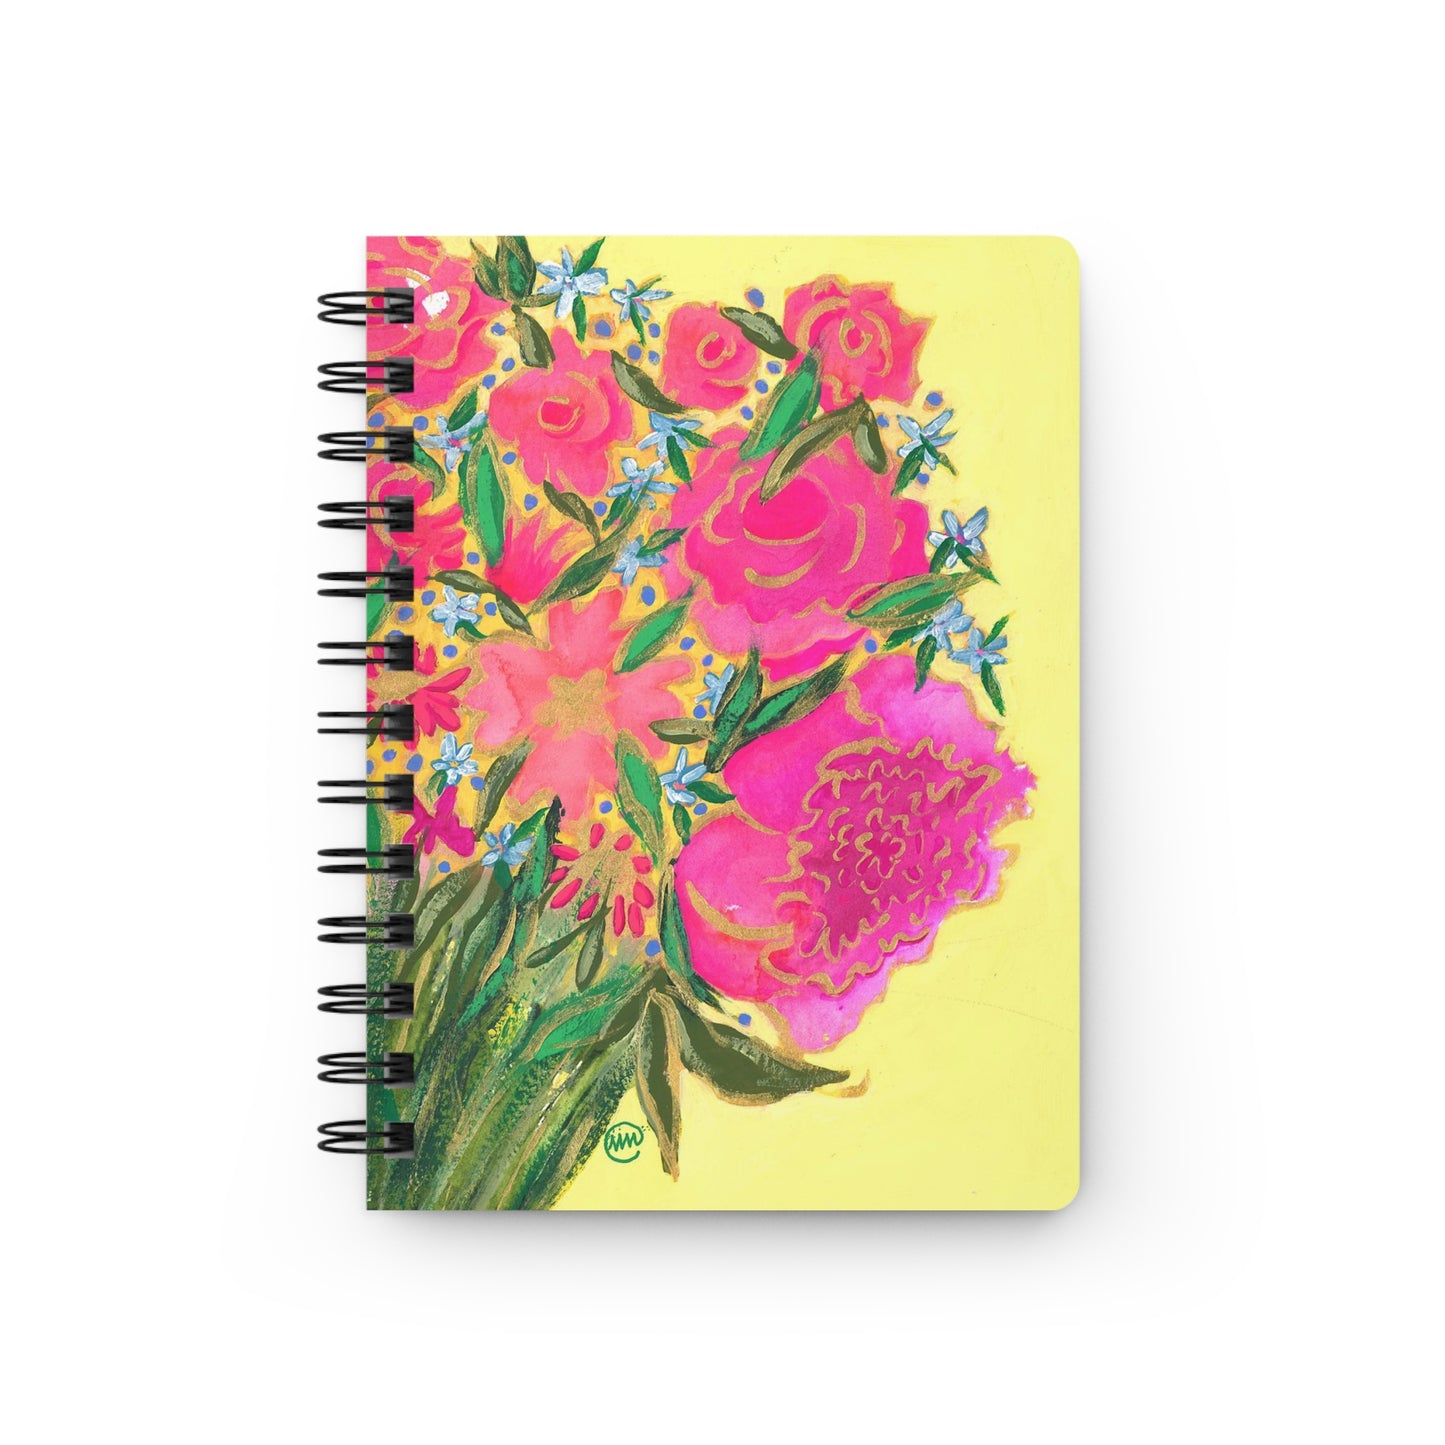 Joyful Blooms Spiral Bound Journal